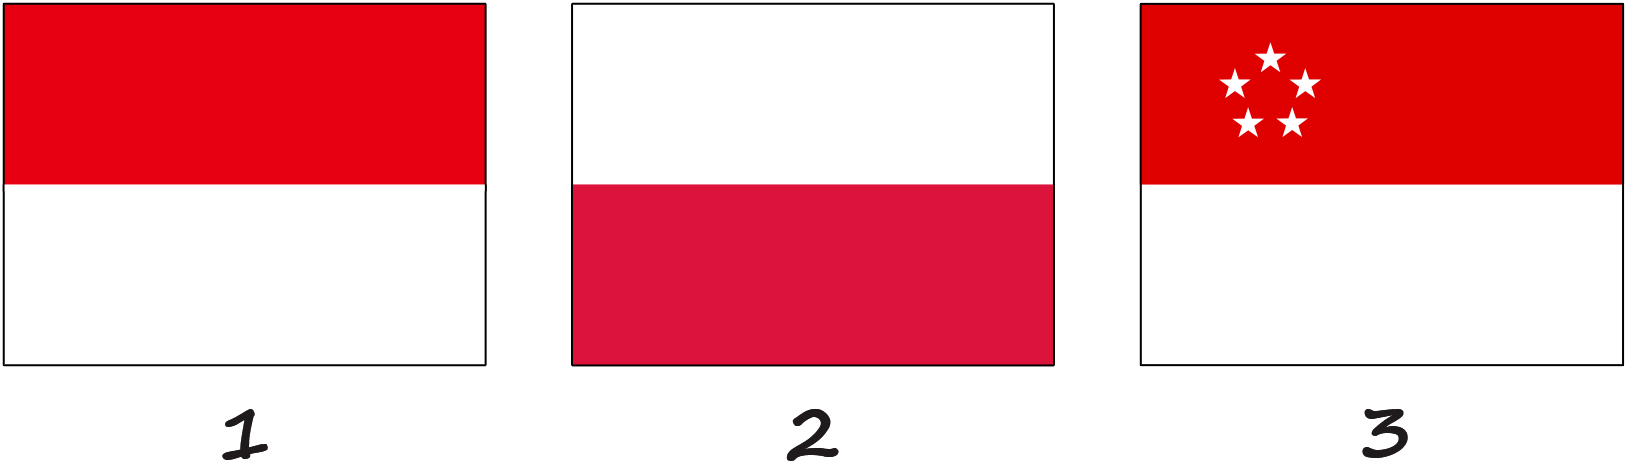 Banderas similares a la bandera de Mónaco